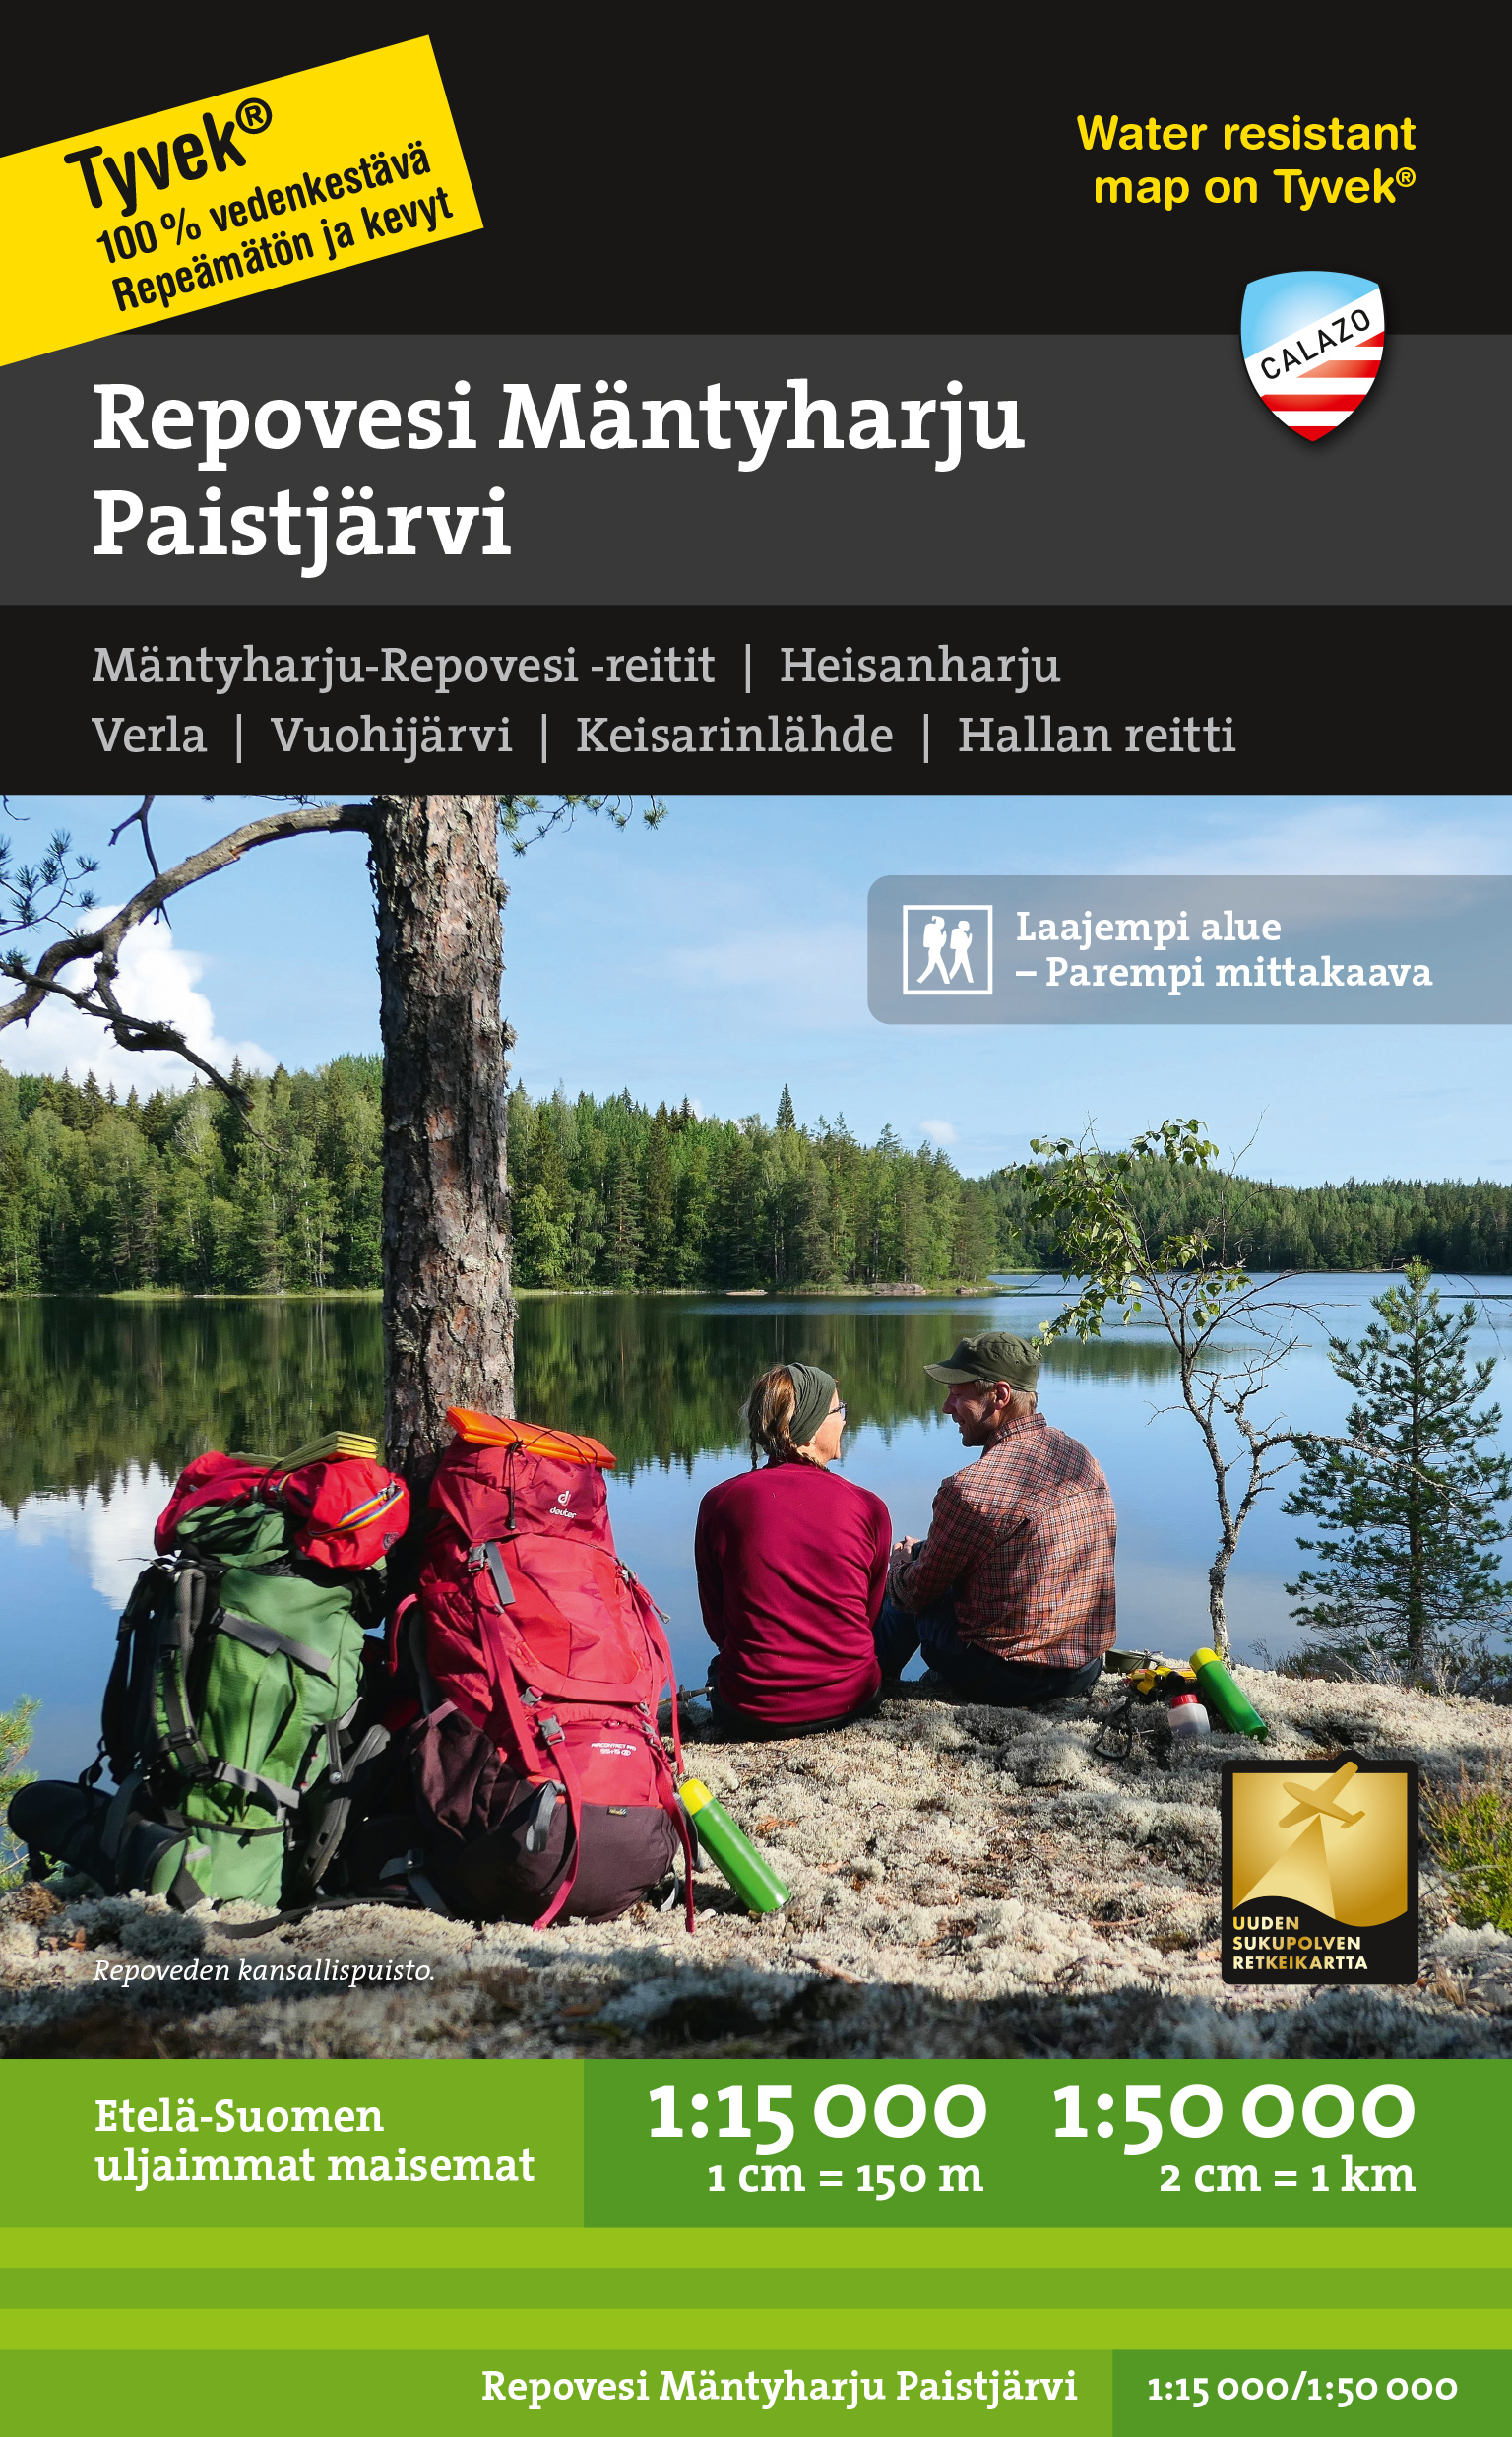 Repovesi Mäntyharju Paistjärvi